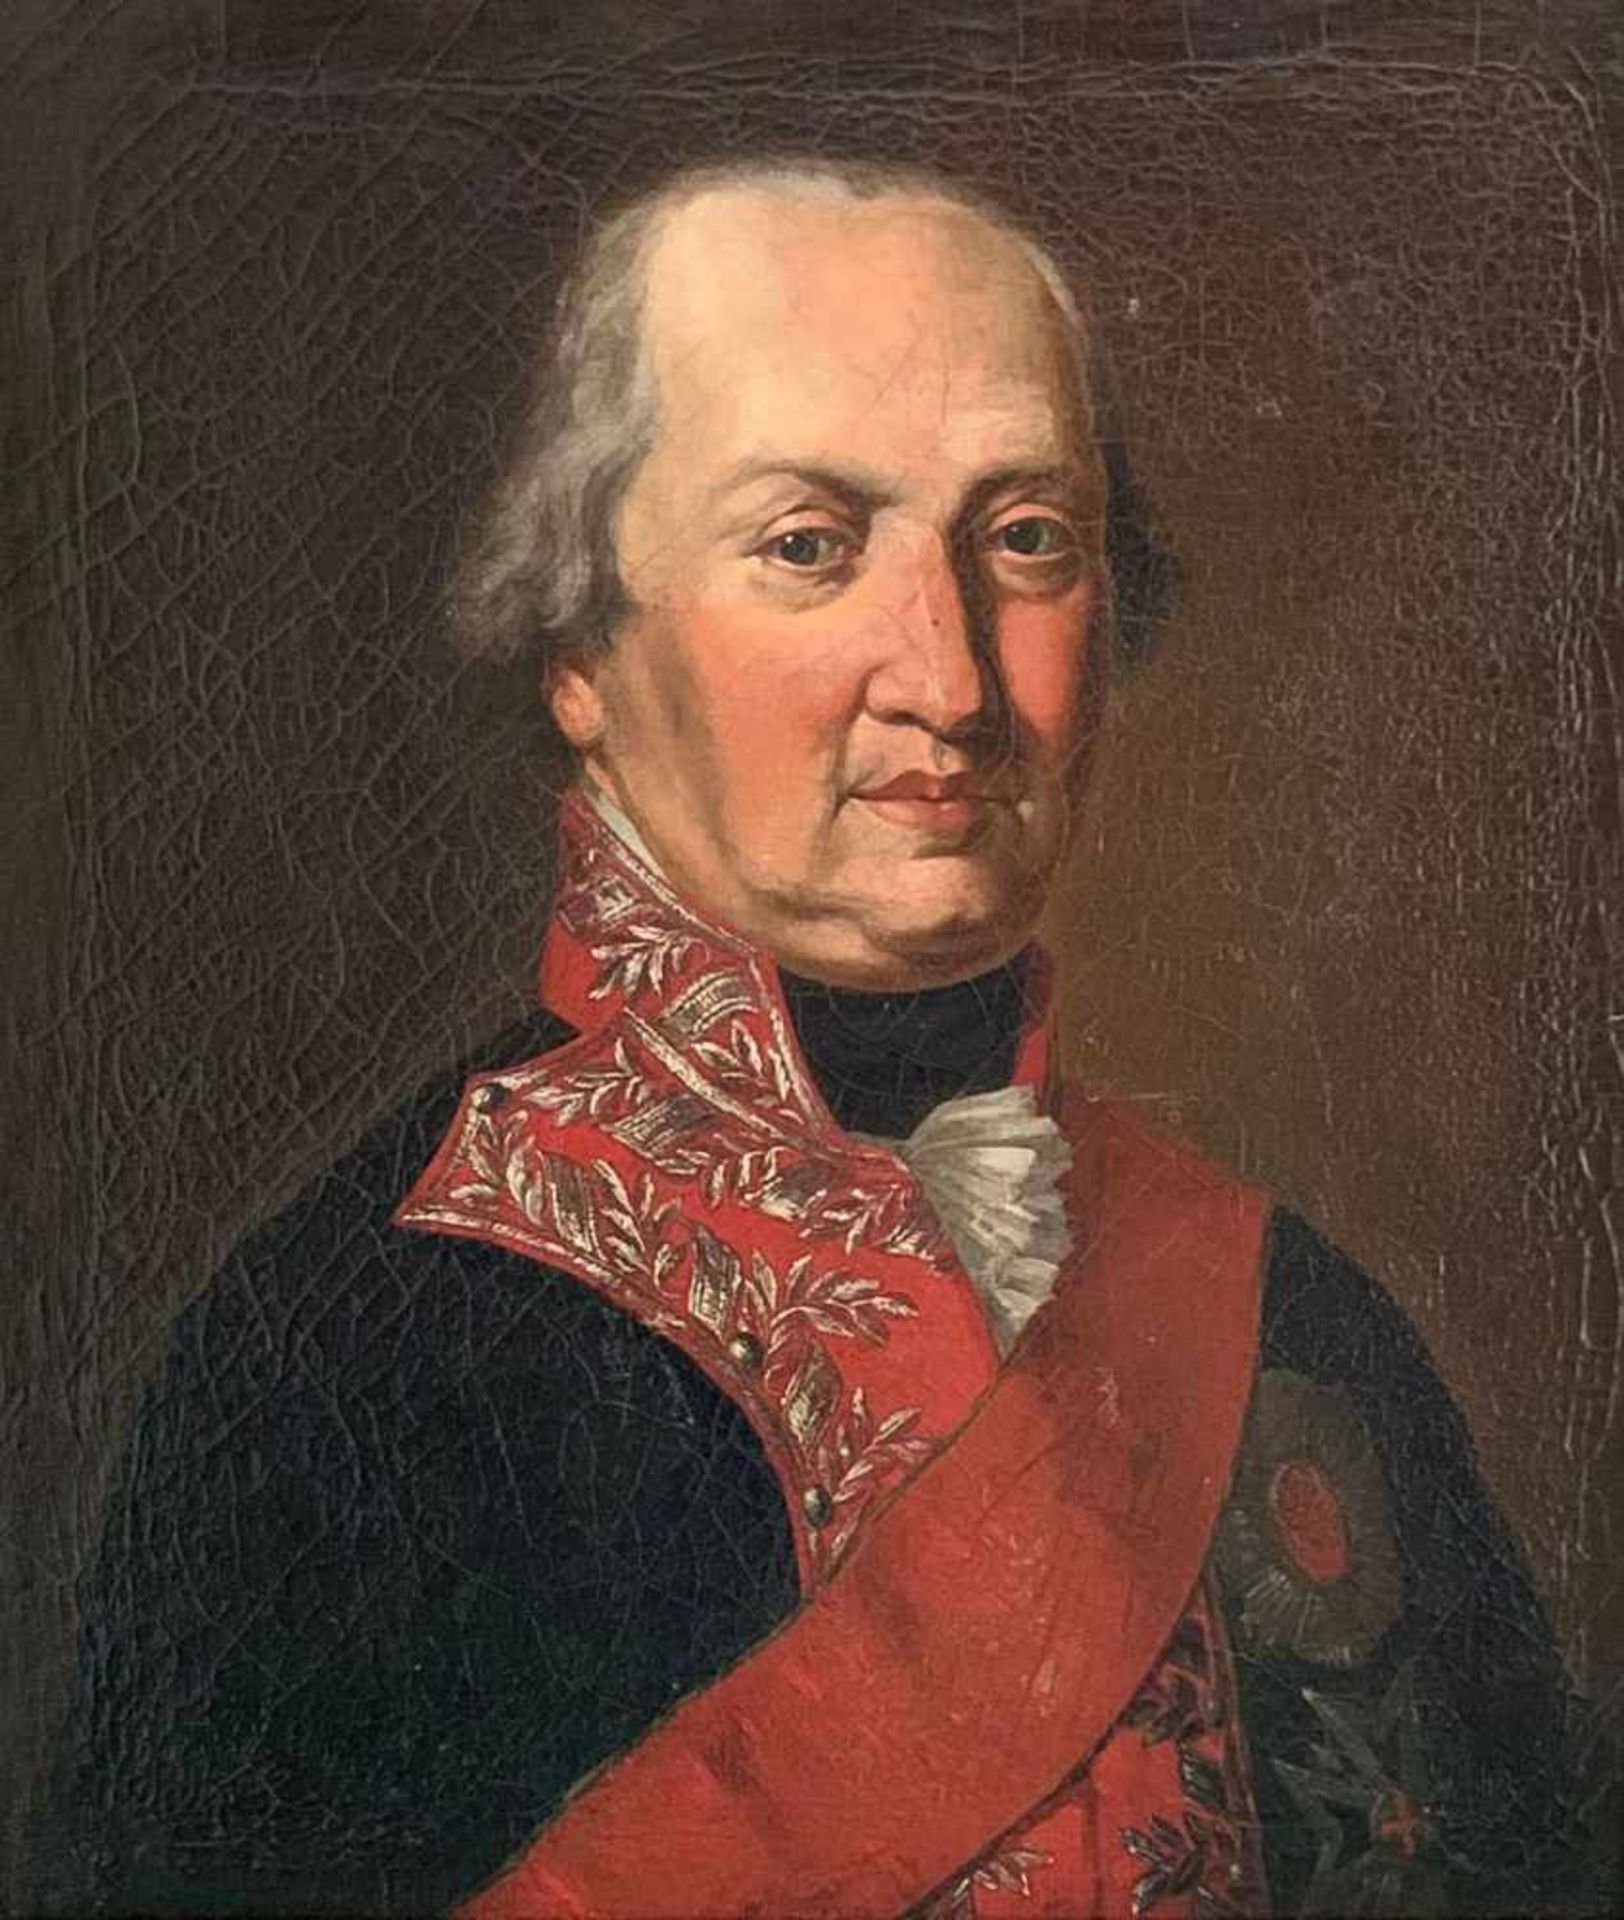 Portrait König Max Joseph von Bayern. Erster König von Bayern / First King of Bavaria. 19. Jh., Öl